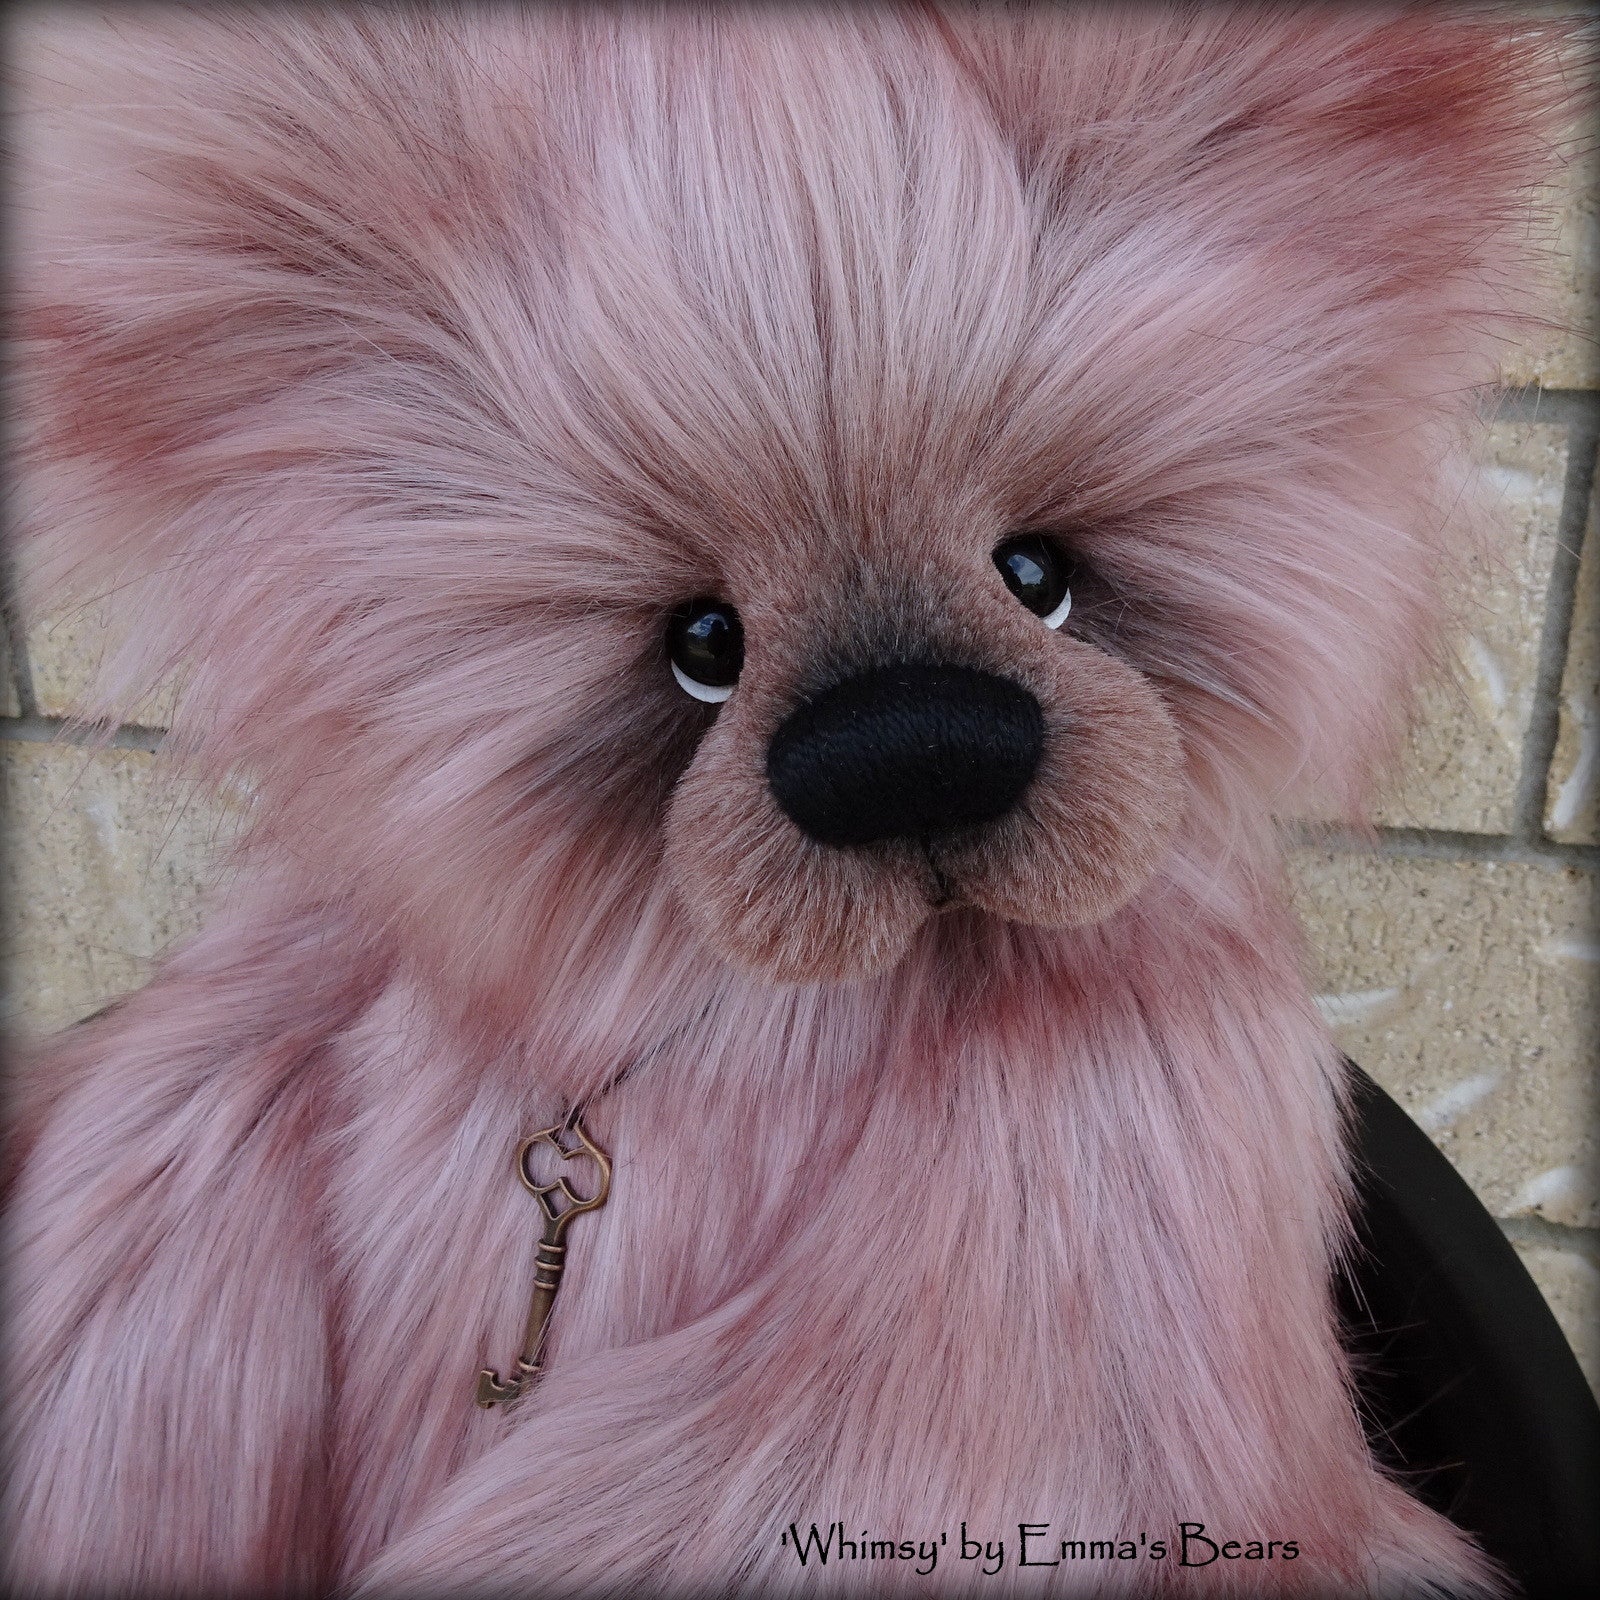 Whimsy - 20IN faux fur bear by Emmas Bears - OOAK